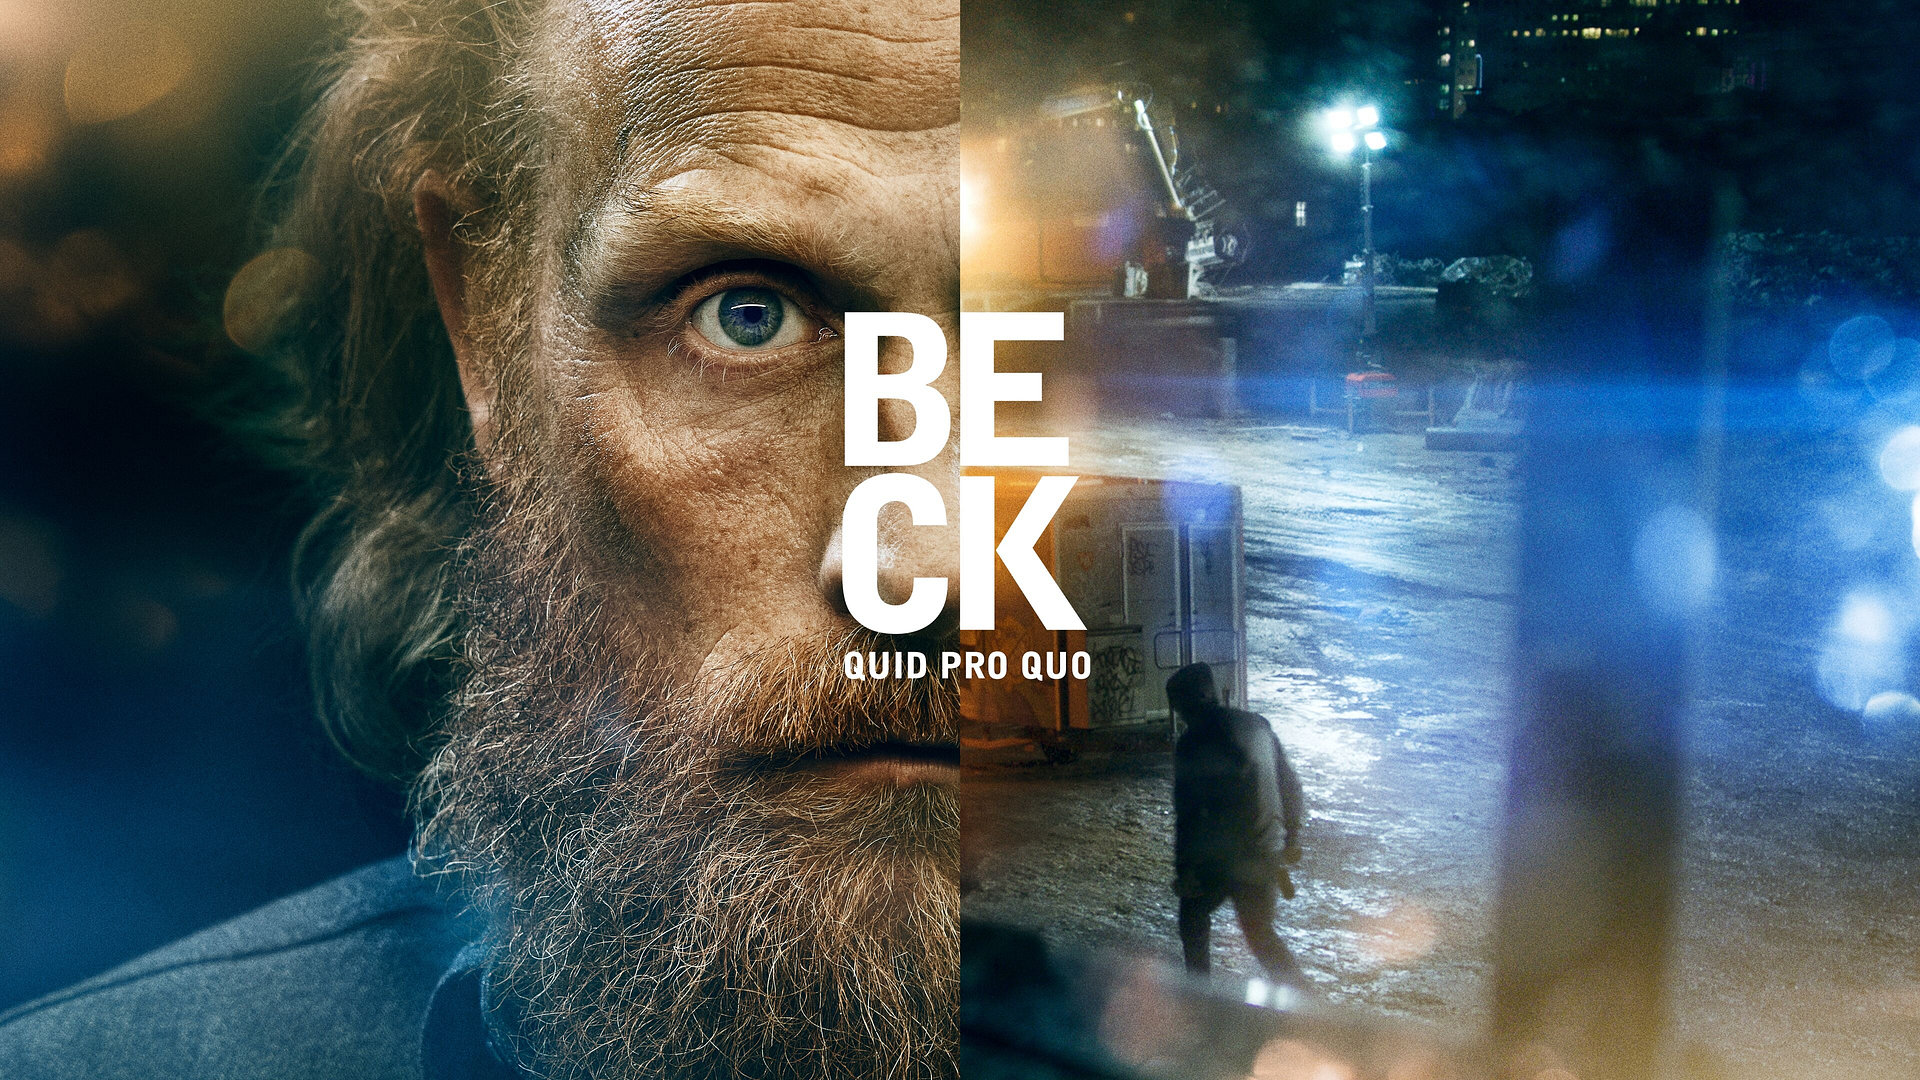 Beck – Quid Pro Quo (48)